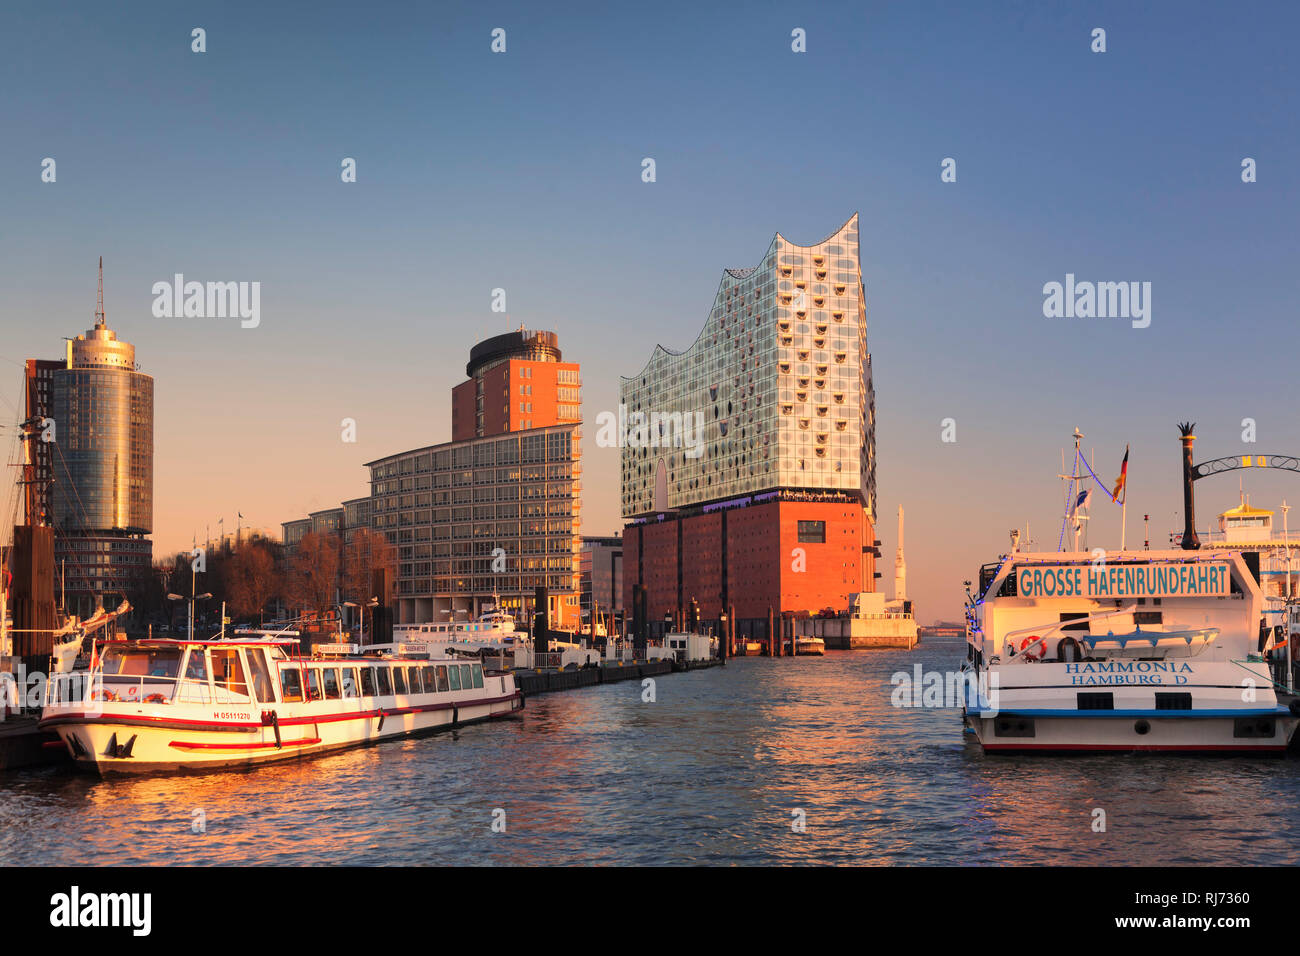 Elbphilharmonie bei Sonnenuntergang, HafenCity, Hamburg, Deutschland Stock Photo